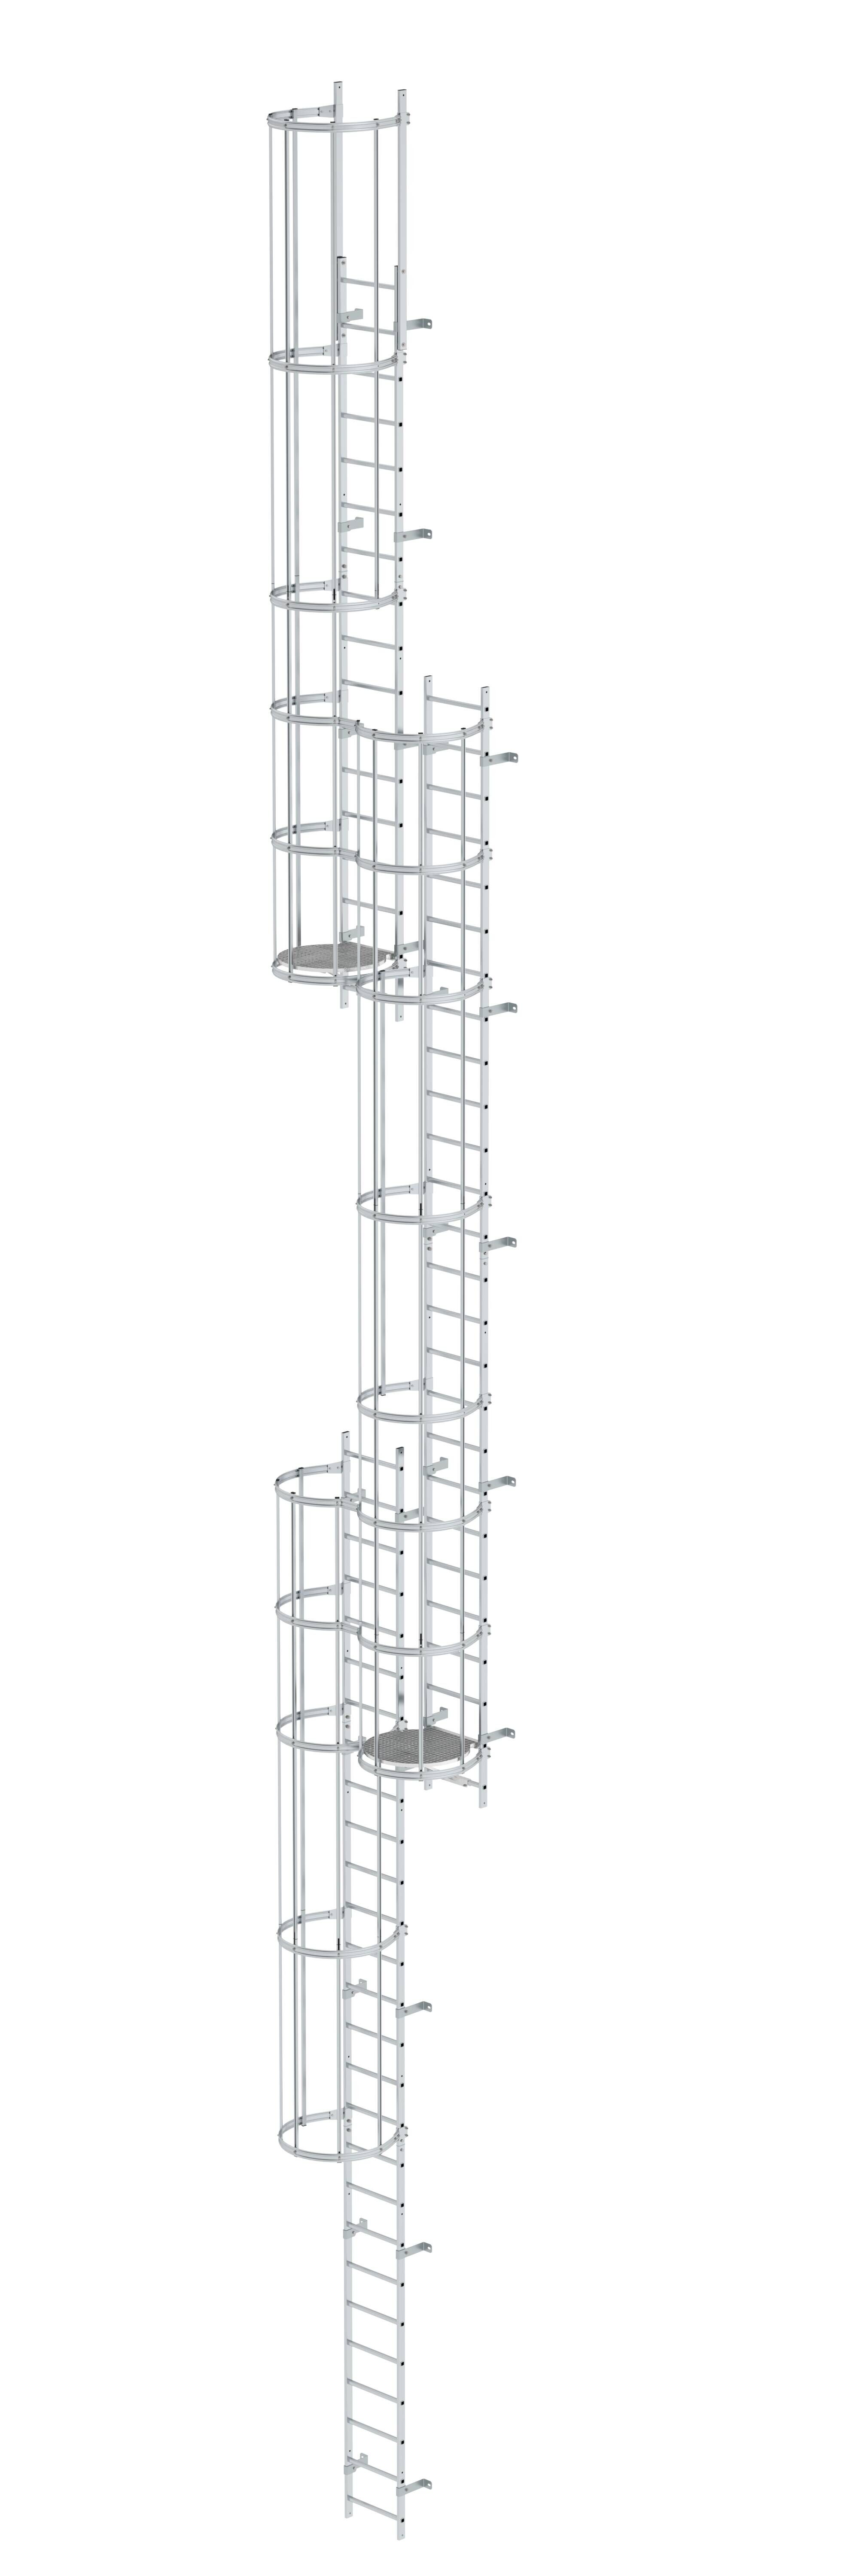 Mehrzügige Steigleiter mit Rückenschutz (Notleiter) Aluminium blank 16,32m